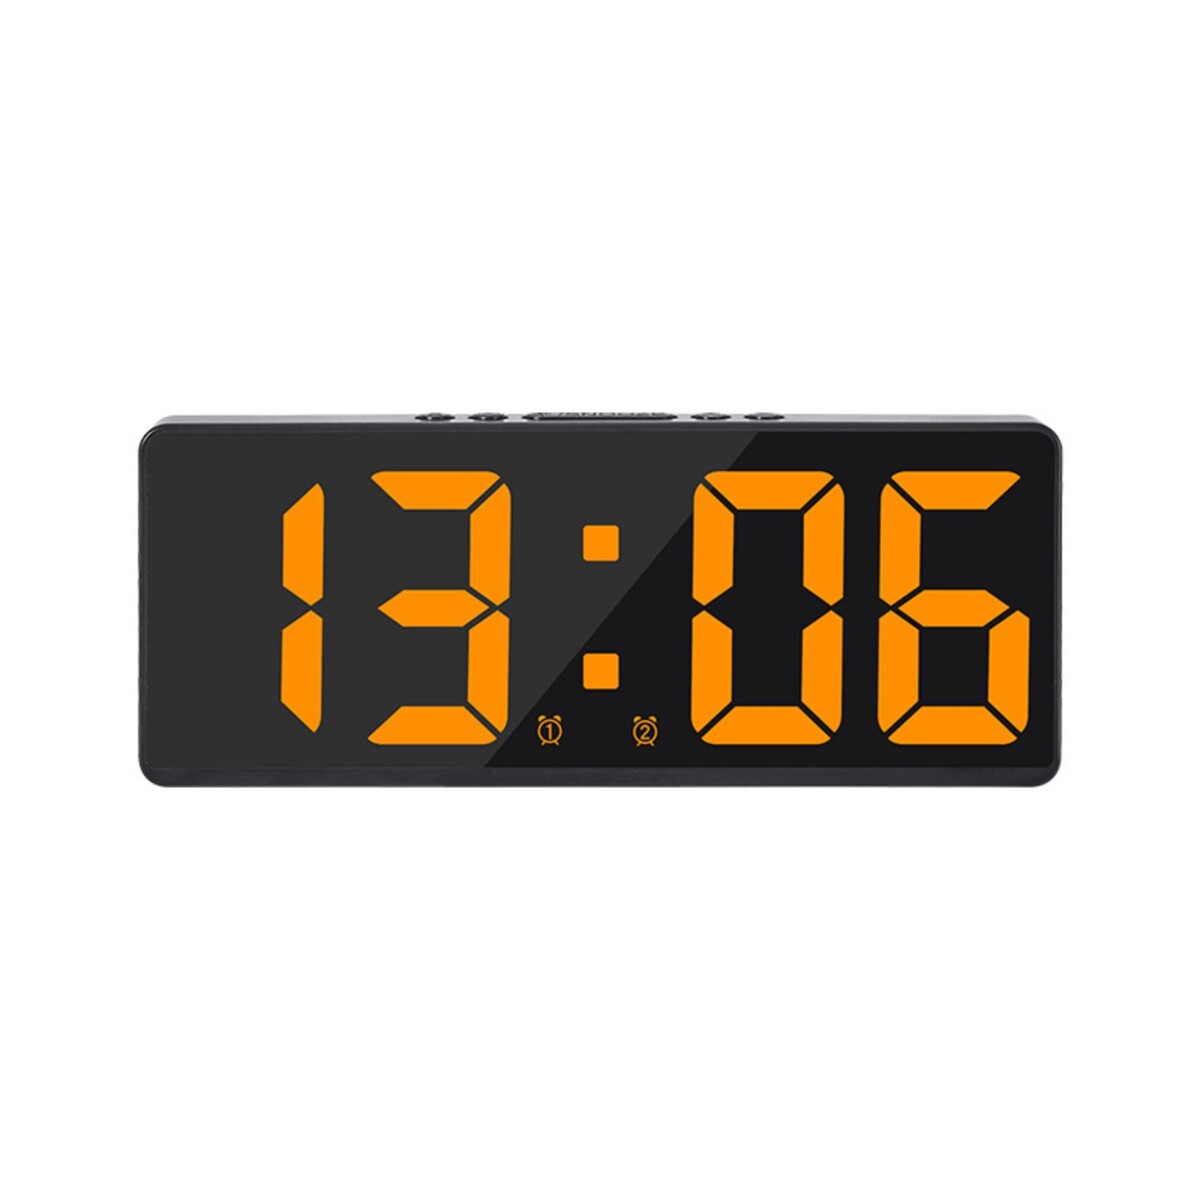 Часы - будильник электронные настольные с термометром, календарем, 15 х 6.3 см, ааа, usb часы электронные настольные настенные